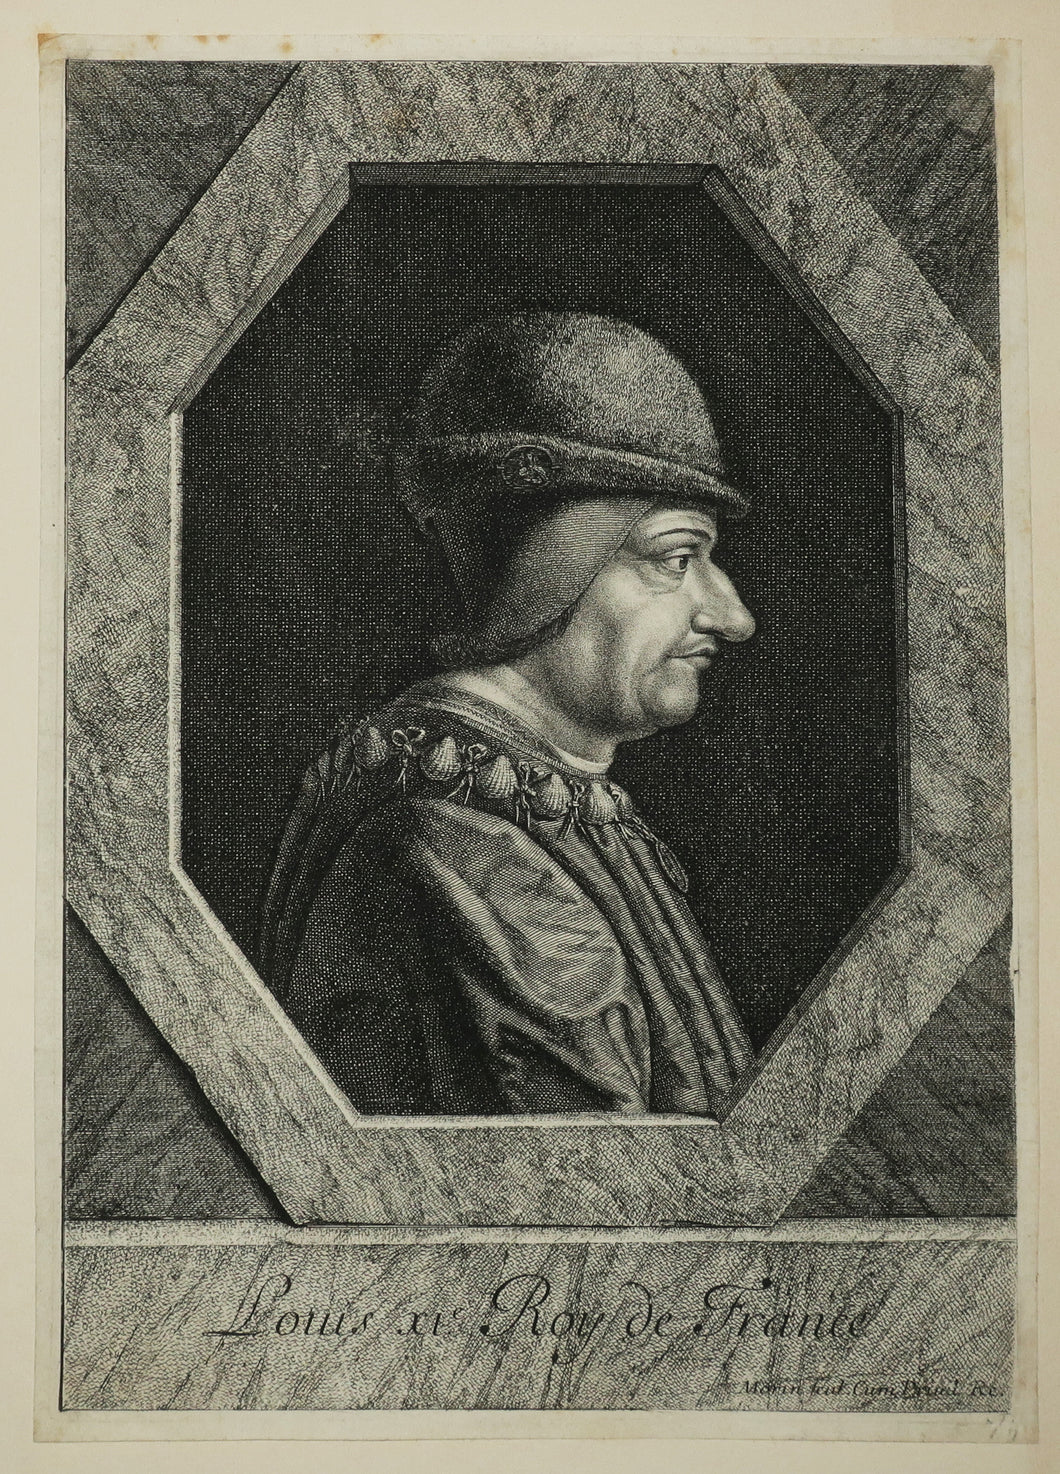 Portrait de Louis XI (1423-1483), Roy de France, en buste de profil à droite, coiffé d'un chapeau de fourrure avec médaille de la Vierge.   c.1640-1650.